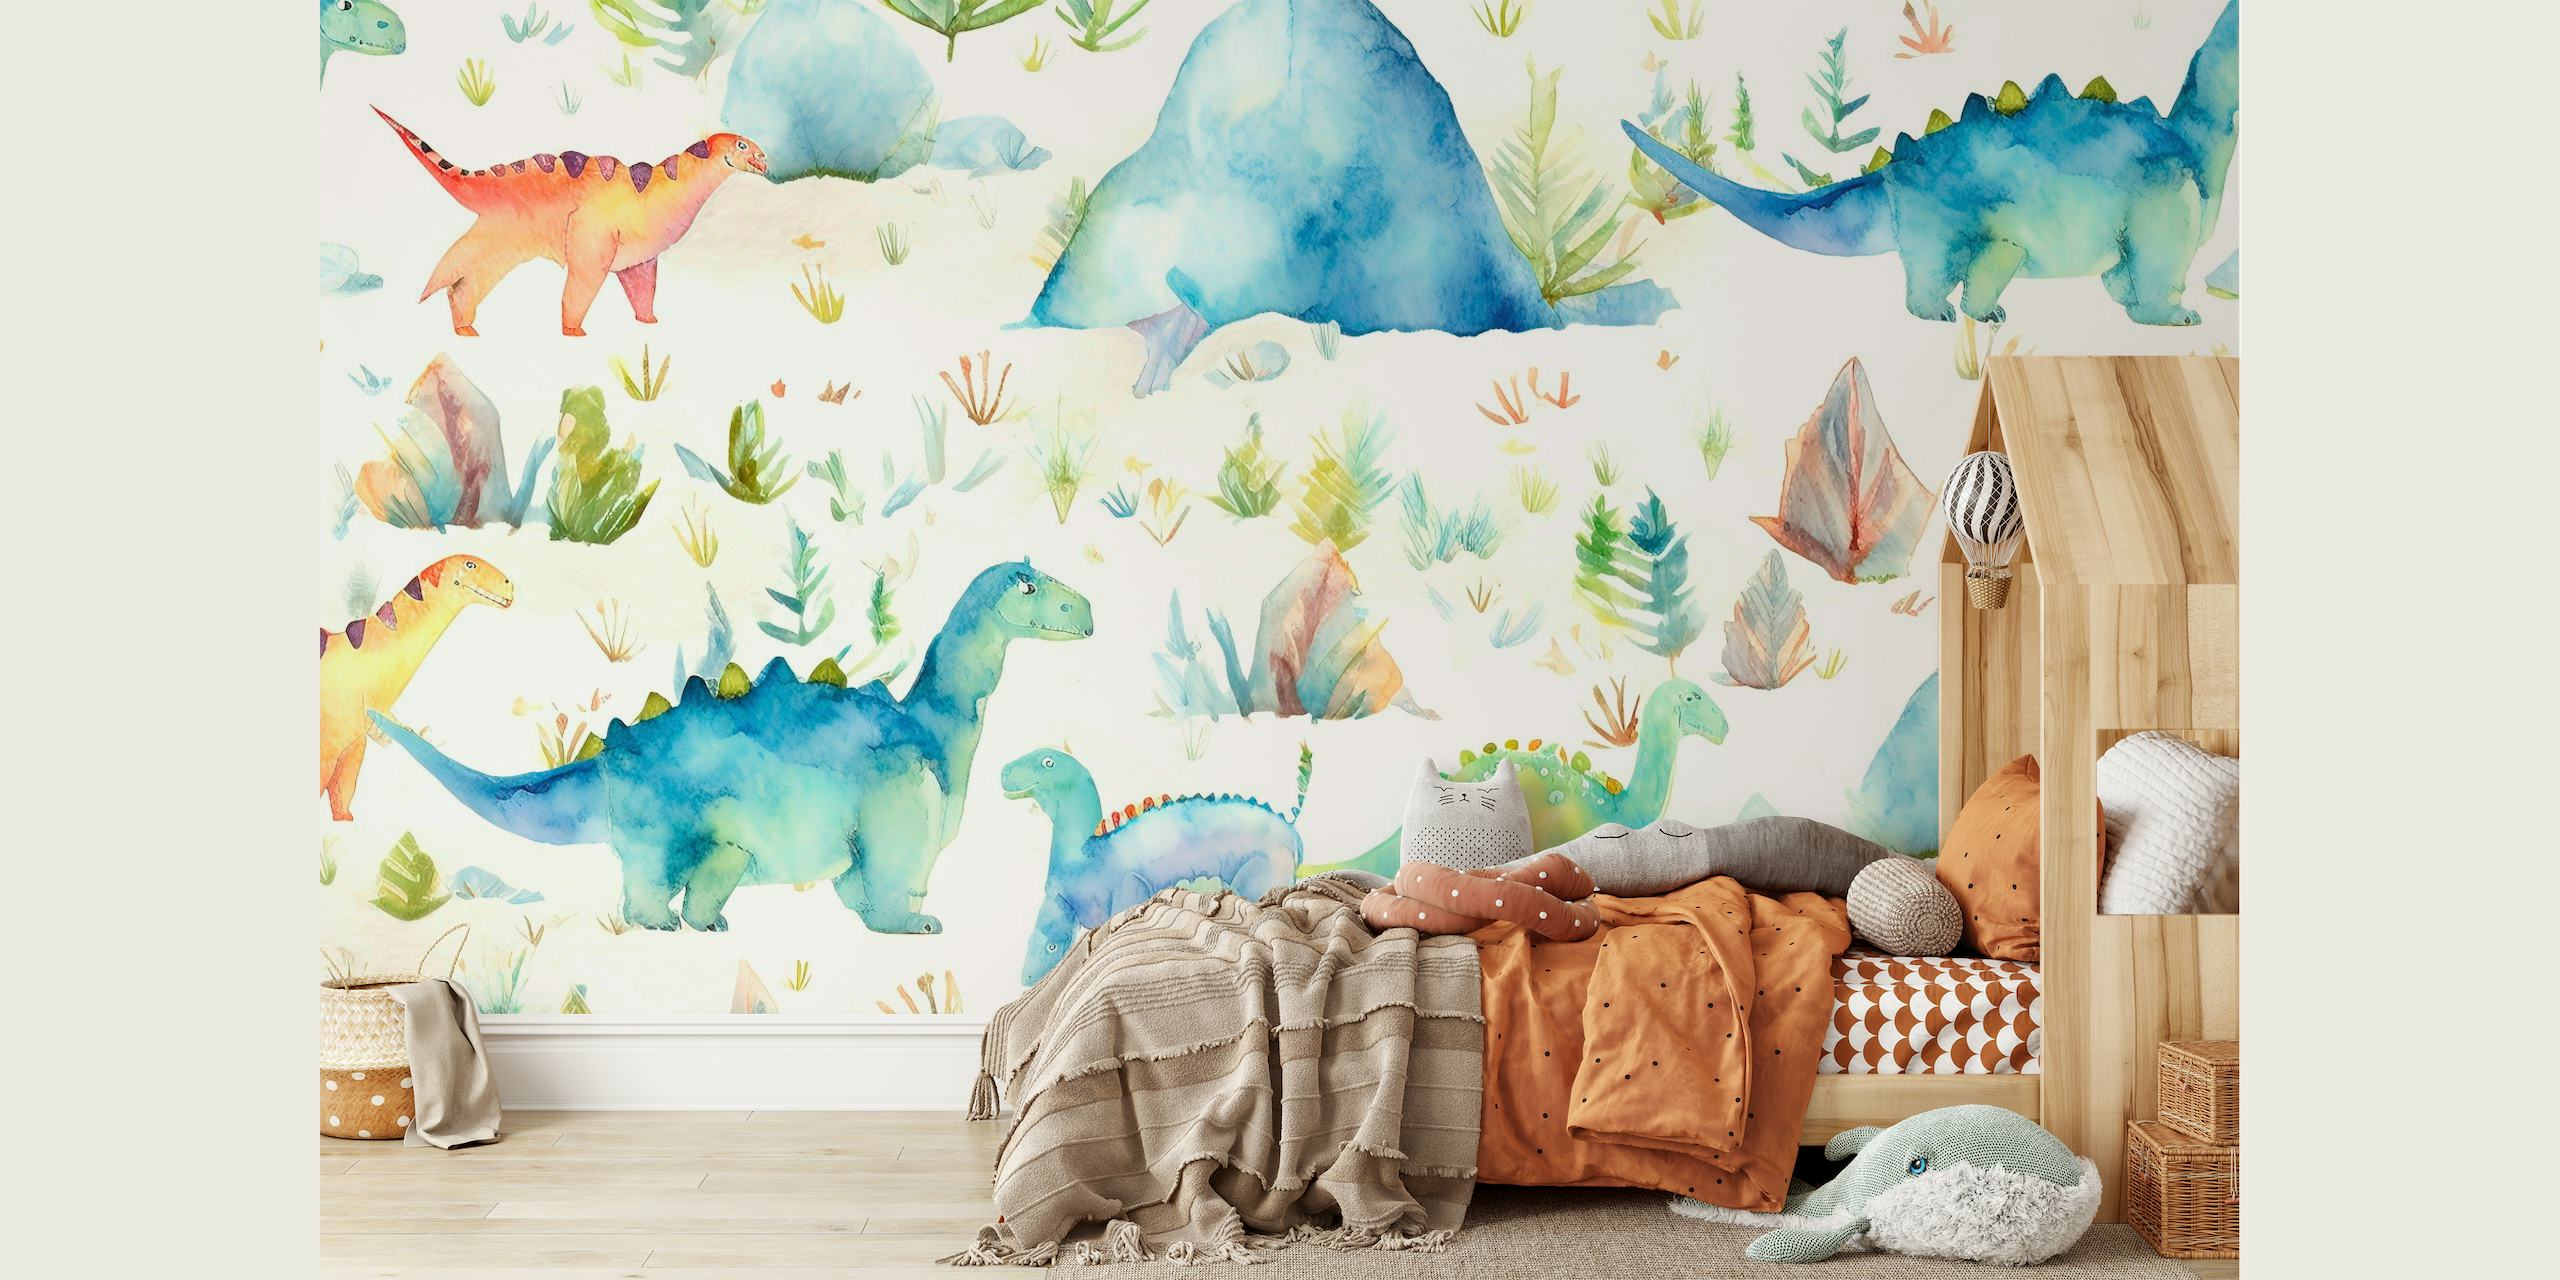 Zidna slika dinosaura u akvarelu s nježnim pastelnim tonovima i pretpovijesnim krajolikom.